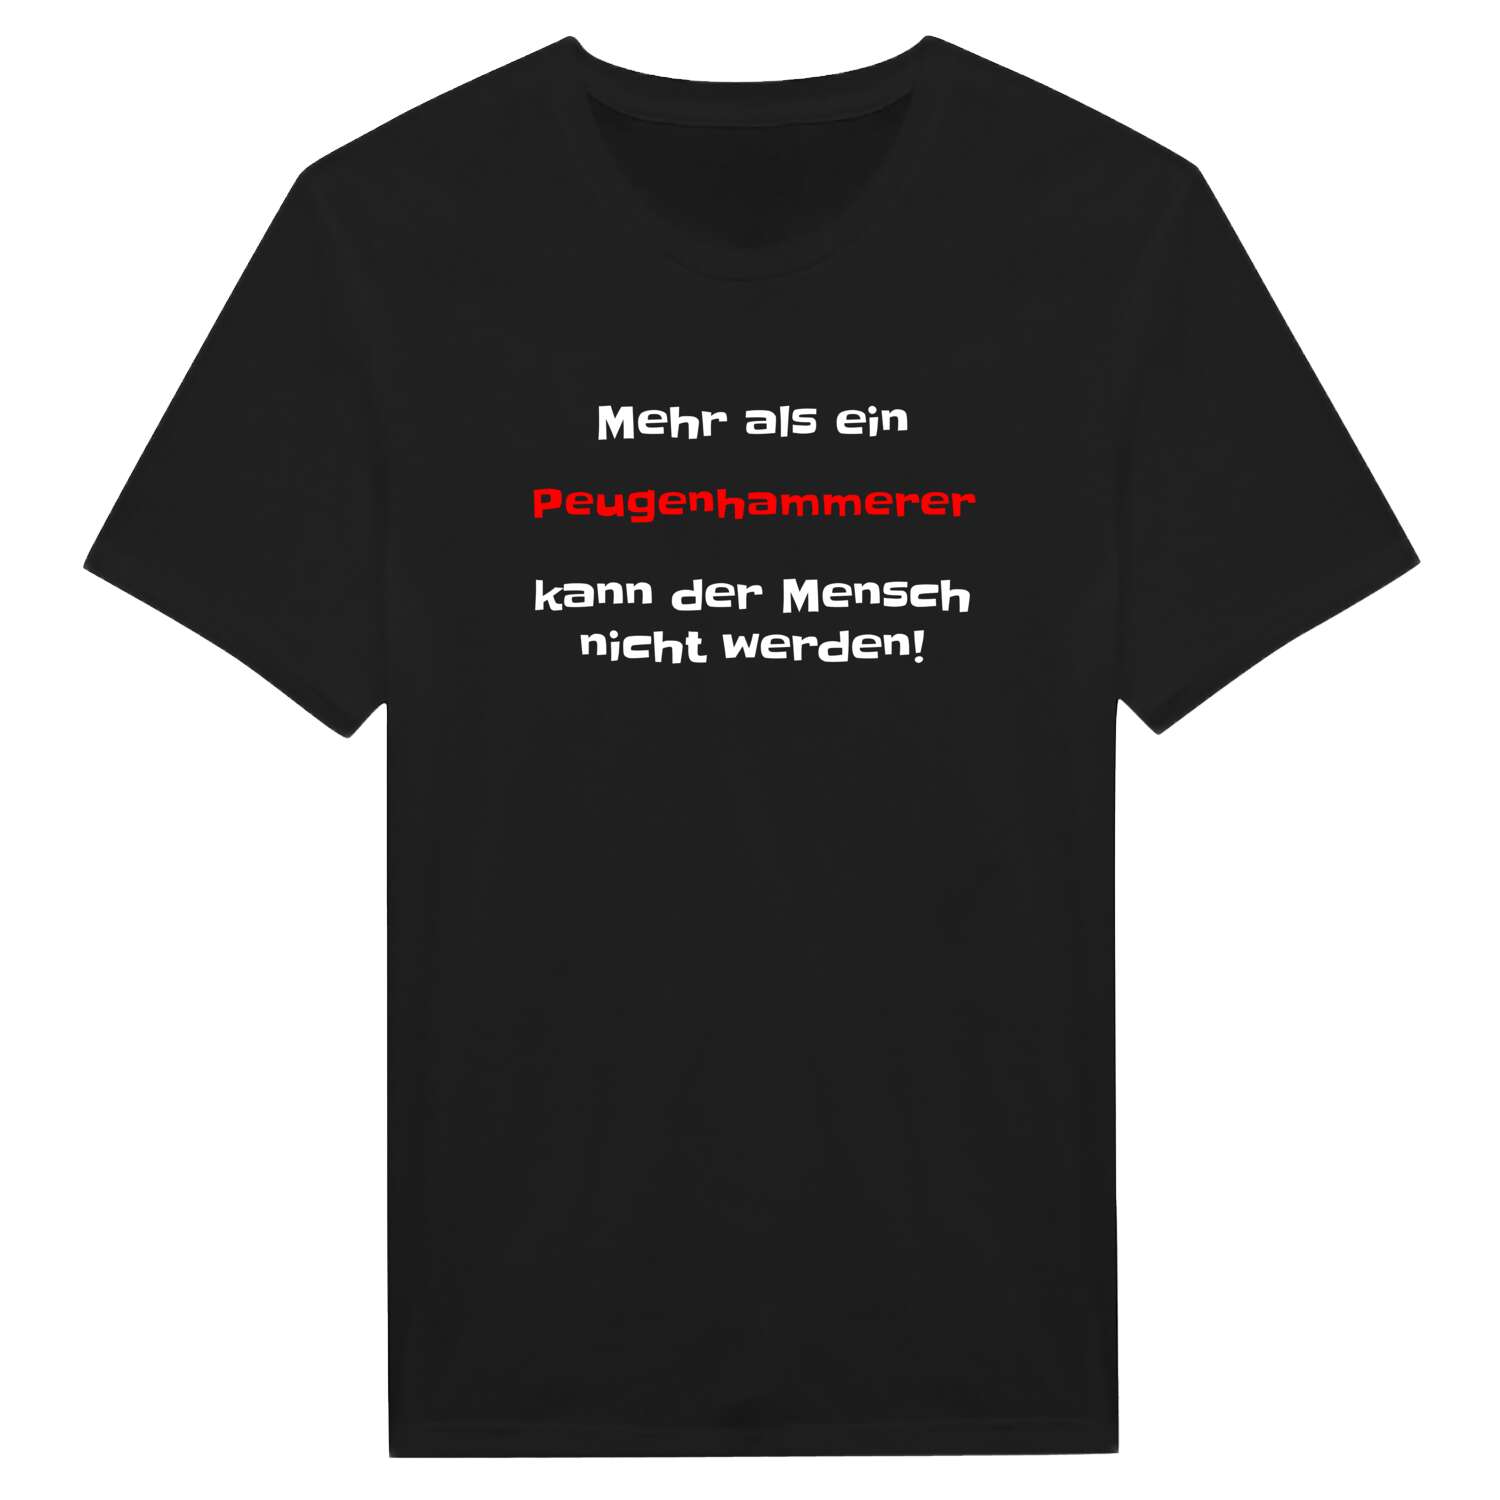 Peugenhammer T-Shirt »Mehr als ein«